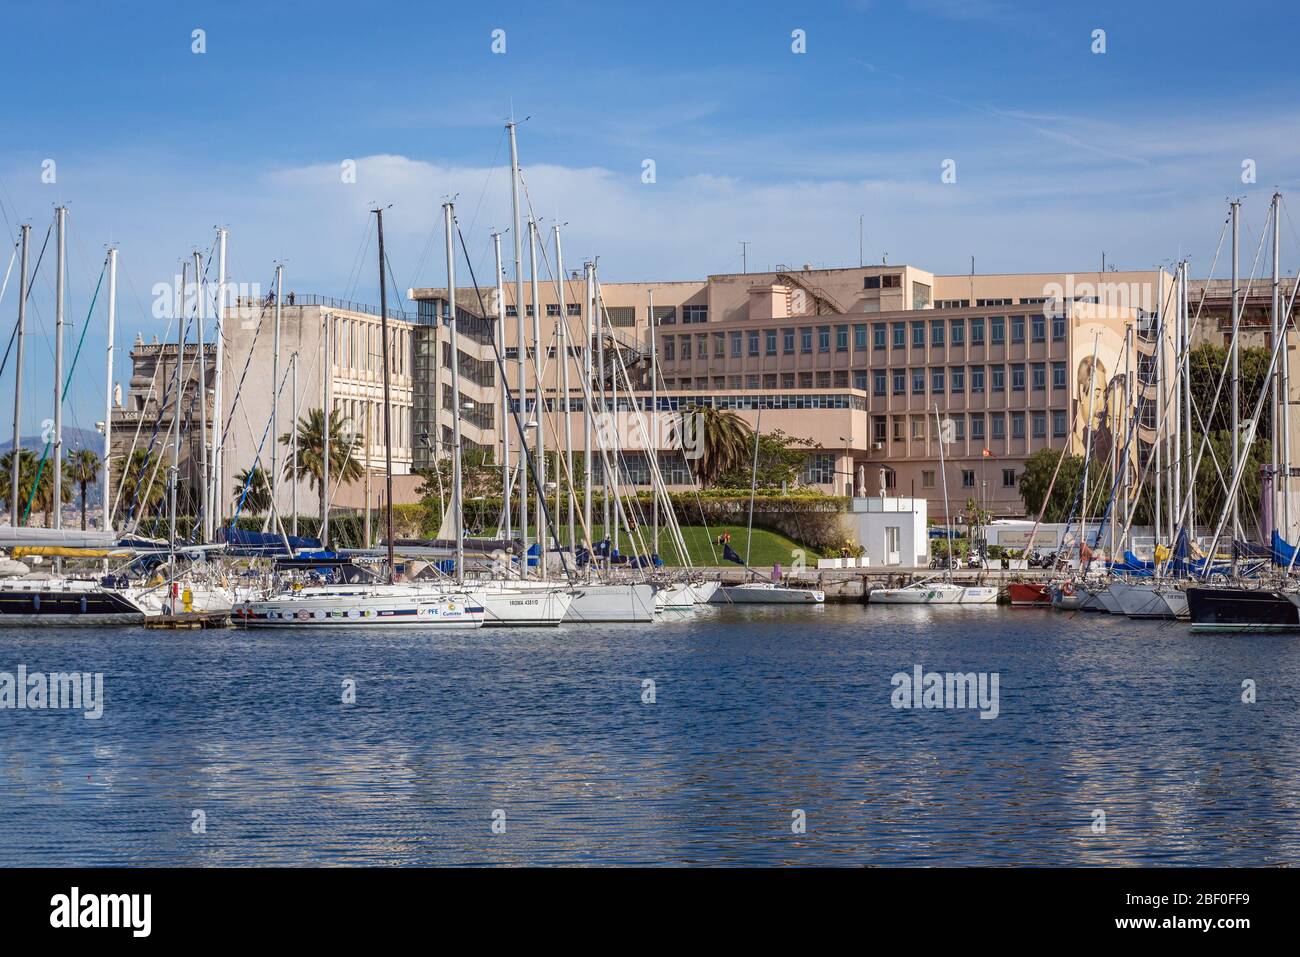 Gioeni Trabia bâtiment nautique à la Cala région de Port de Palerme ville du sud de l'Italie, la capitale de la région autonome de Sicile Banque D'Images